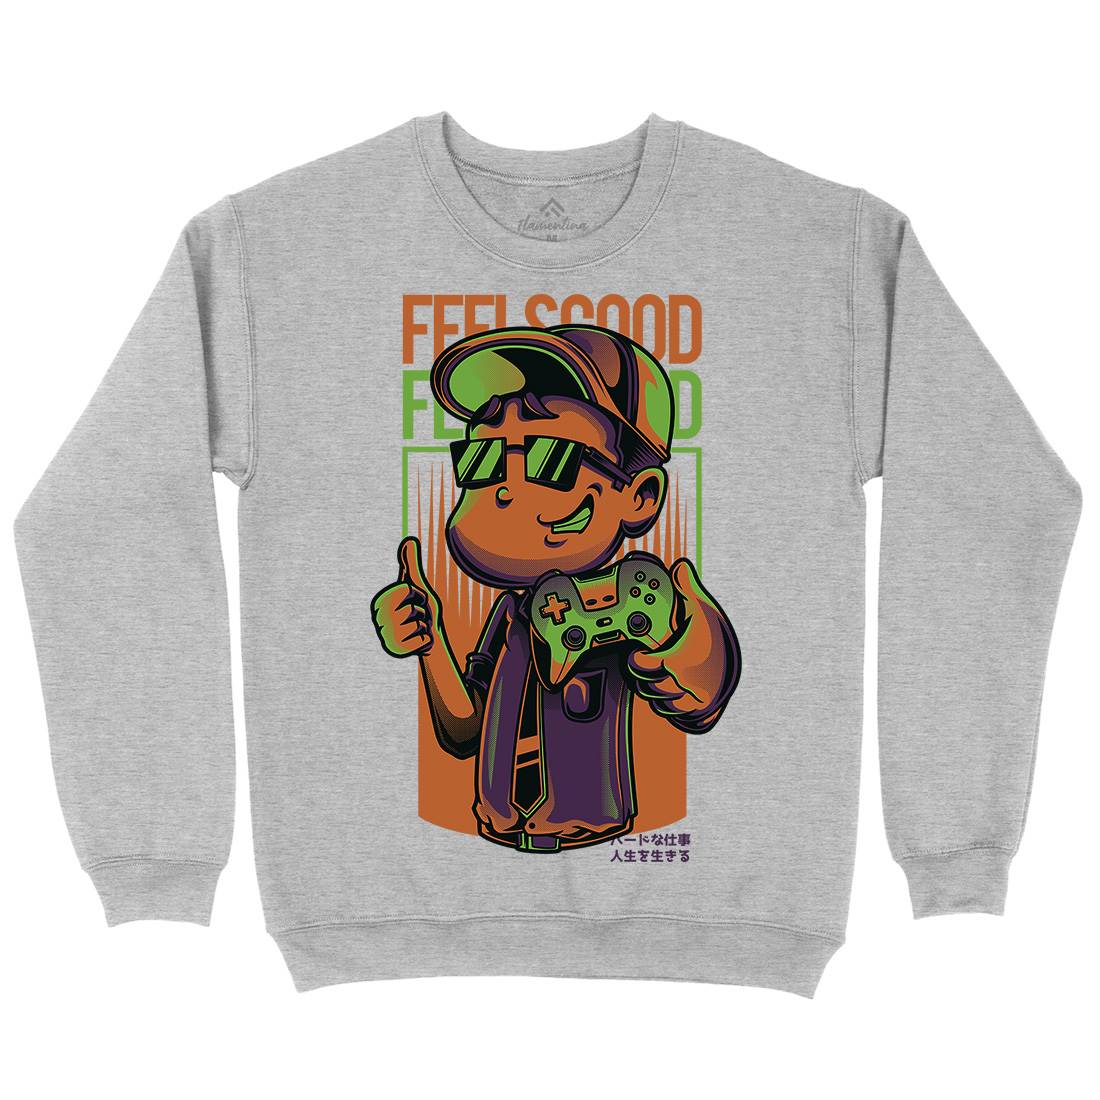 Feels Good Kids Crew Neck Sweatshirt Geek D773